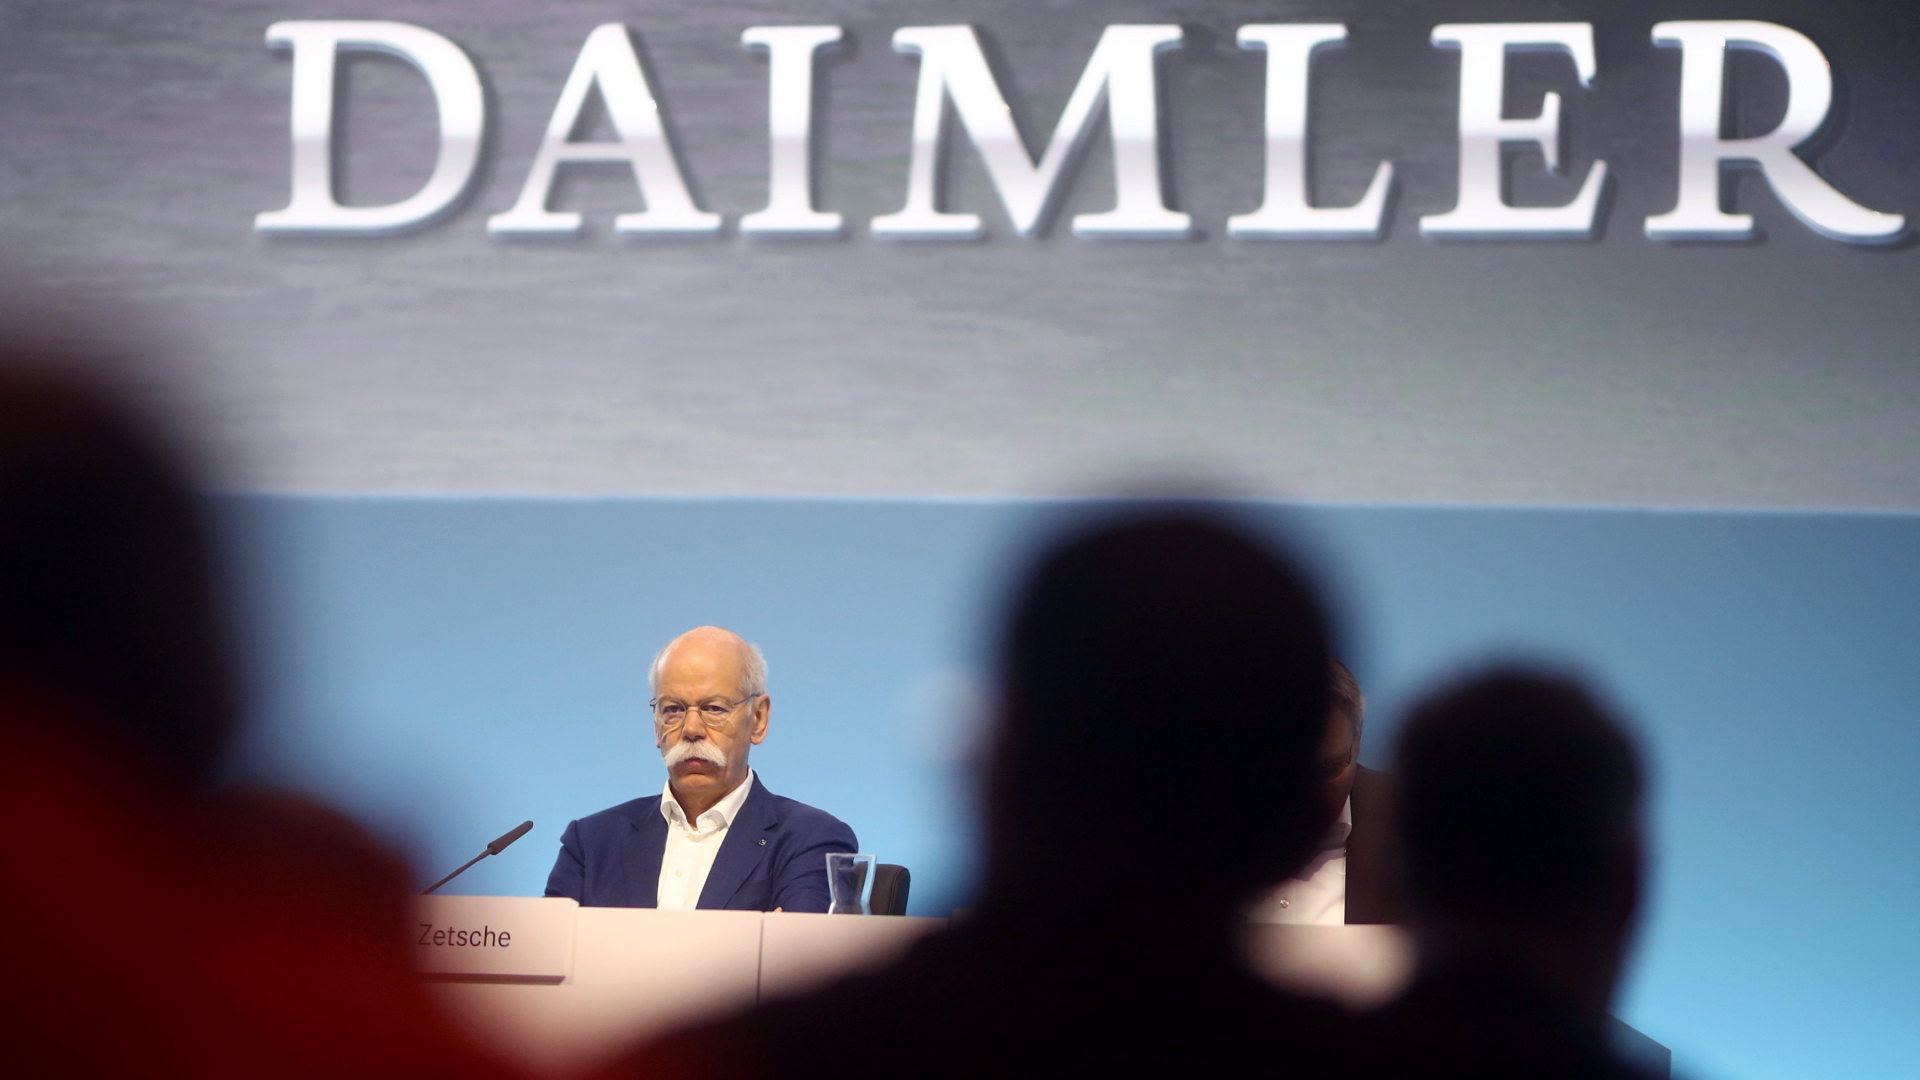 Daimler-Chef Dieter Zetsche bei der Jahreskonferenz in Stuttgart auf der Bühne. | REUTERS